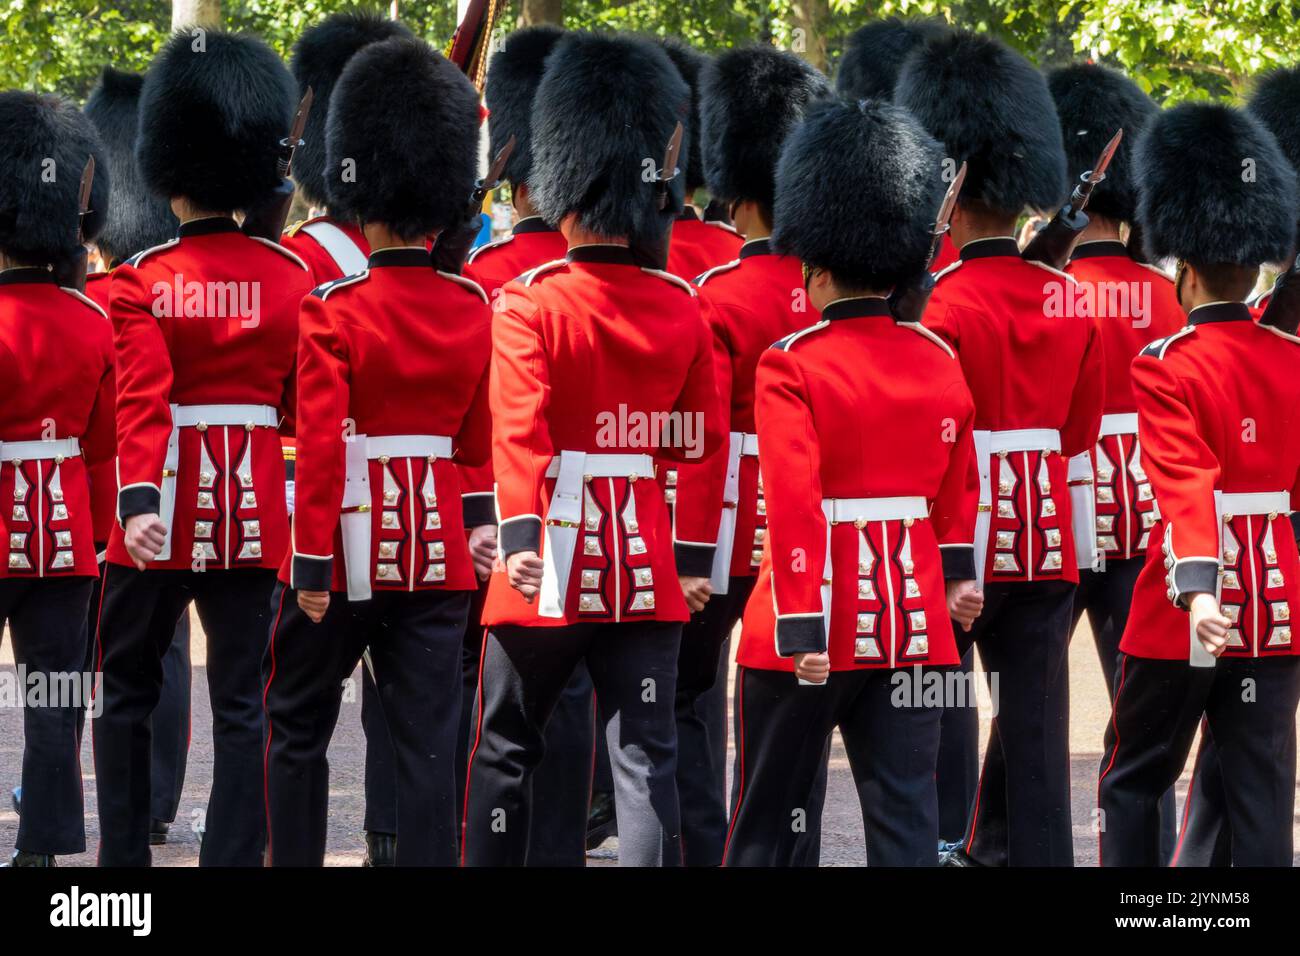 Les gardes britanniques royaux de la reine en uniforme rouge lors de la parade des gardes changeant sur le Mall à Londres au Royaume-Uni Banque D'Images